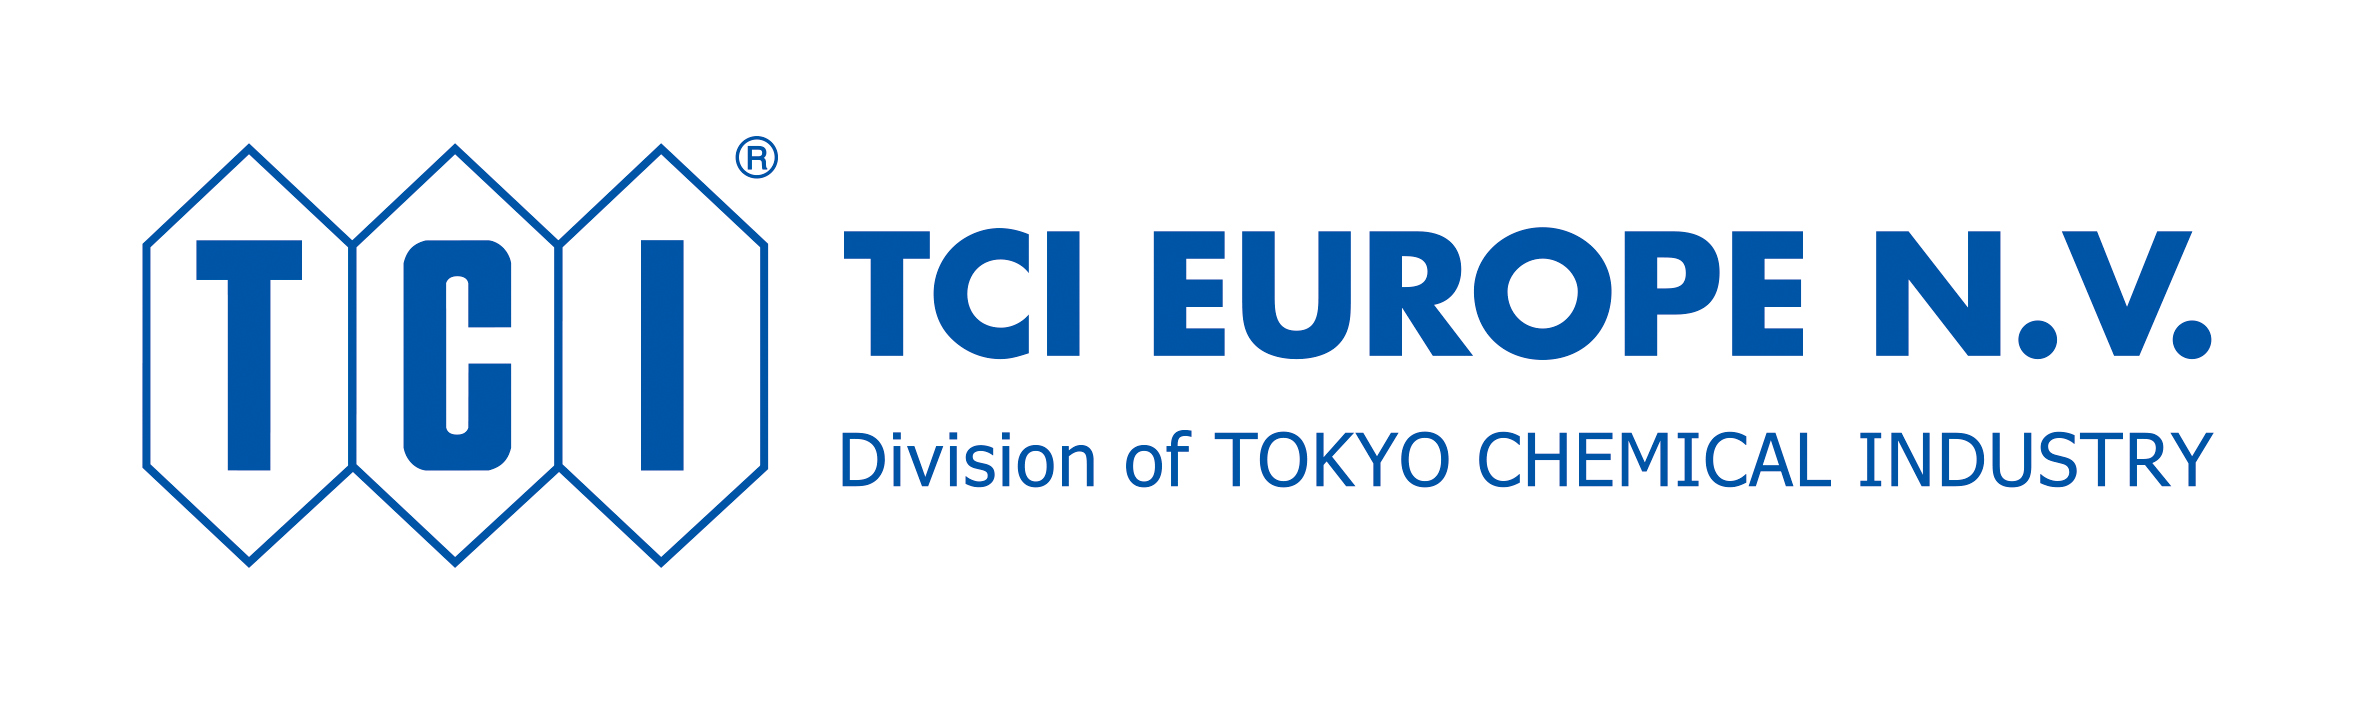 TCI Europe N.V.